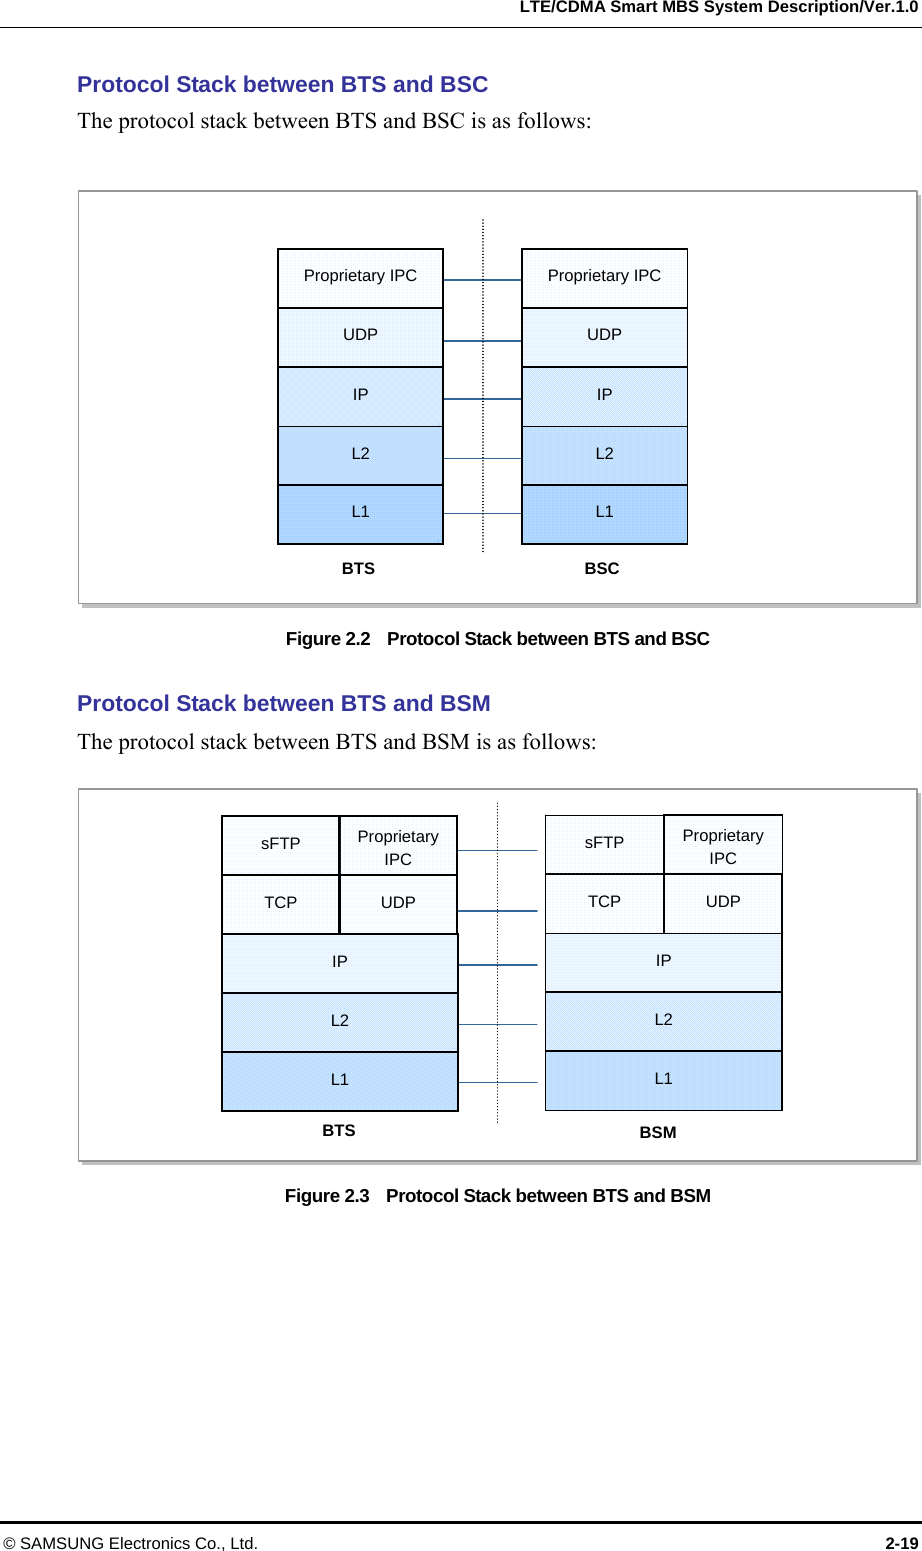   LTE/CDMA Smart MBS System Description/Ver.1.0 © SAMSUNG Electronics Co., Ltd.  2-19 Protocol Stack between BTS and BSC The protocol stack between BTS and BSC is as follows:  Figure 2.2    Protocol Stack between BTS and BSC  Protocol Stack between BTS and BSM The protocol stack between BTS and BSM is as follows:  Figure 2.3    Protocol Stack between BTS and BSM  BTS UDP IP L2 L1 BSC UDP IP L2 L1 Proprietary IPC  Proprietary IPC  BTS IP L2 L1 BSM TCP  UDP sFTP  Proprietary IPCIP L2 L1 TCP  UDP sFTP  Proprietary IPC 